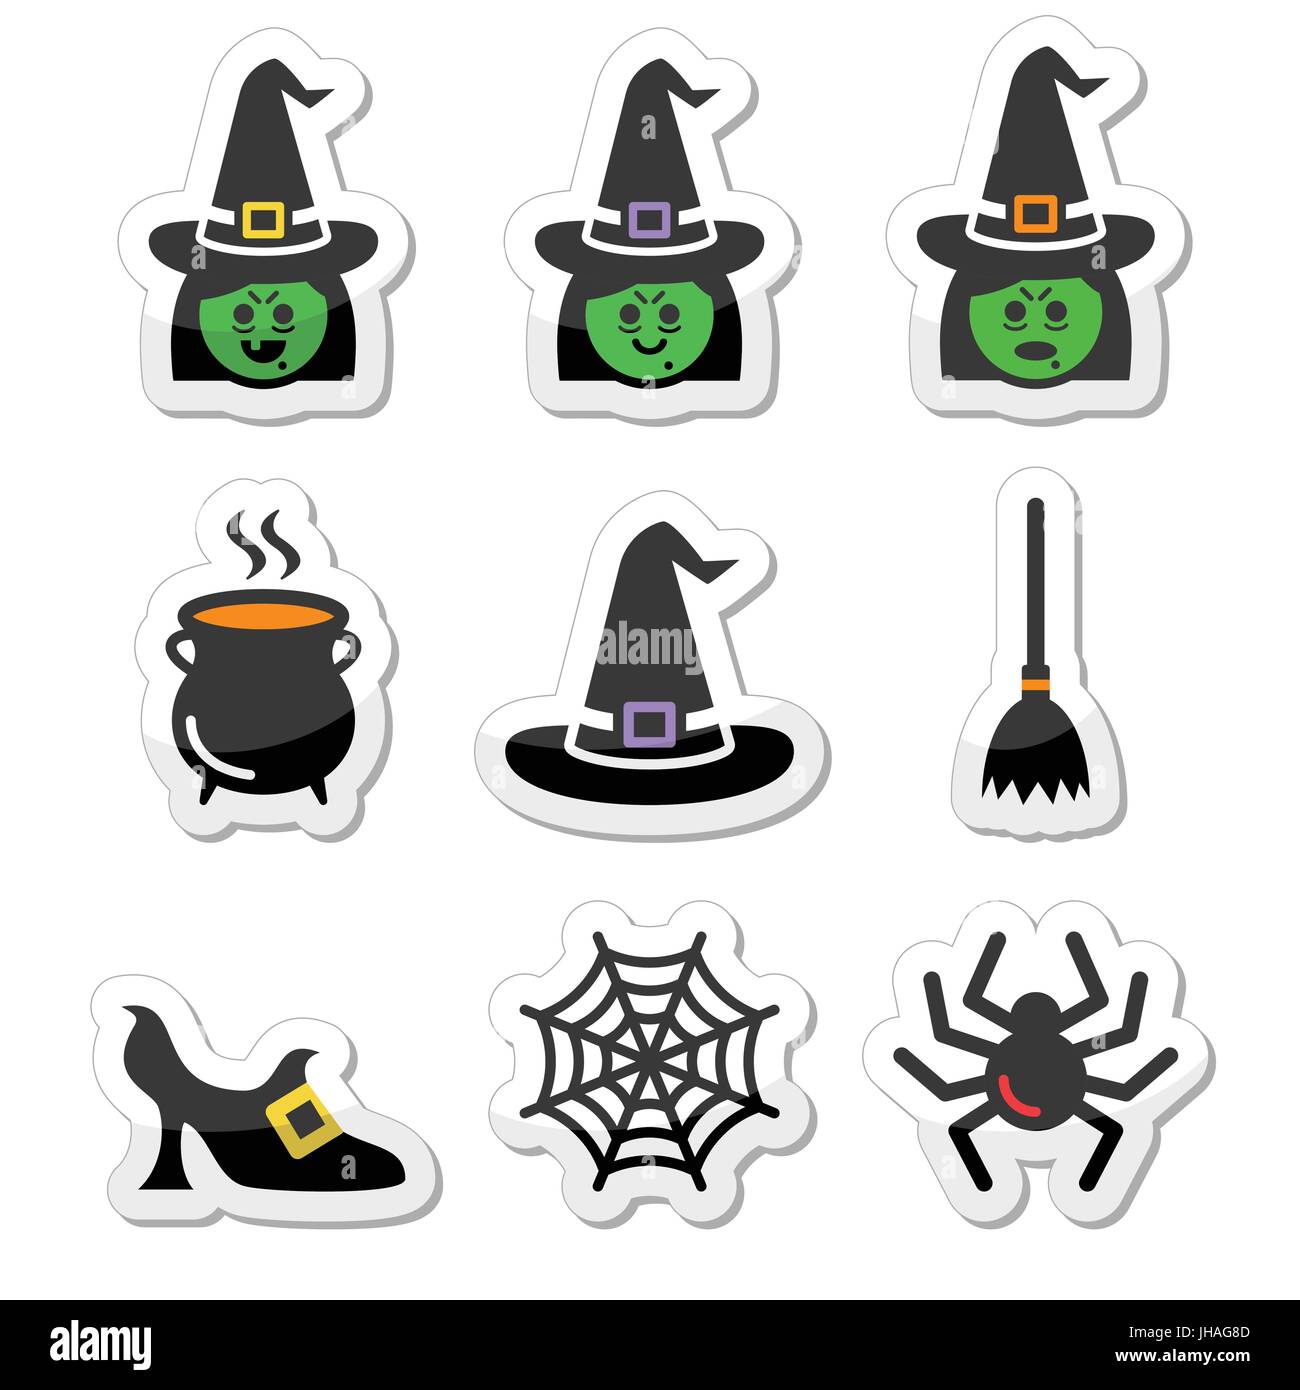 Hexe Halloween Vector Icons Set bunte Symbole für Halloween feiern auf weißen isoliert Stock Vektor